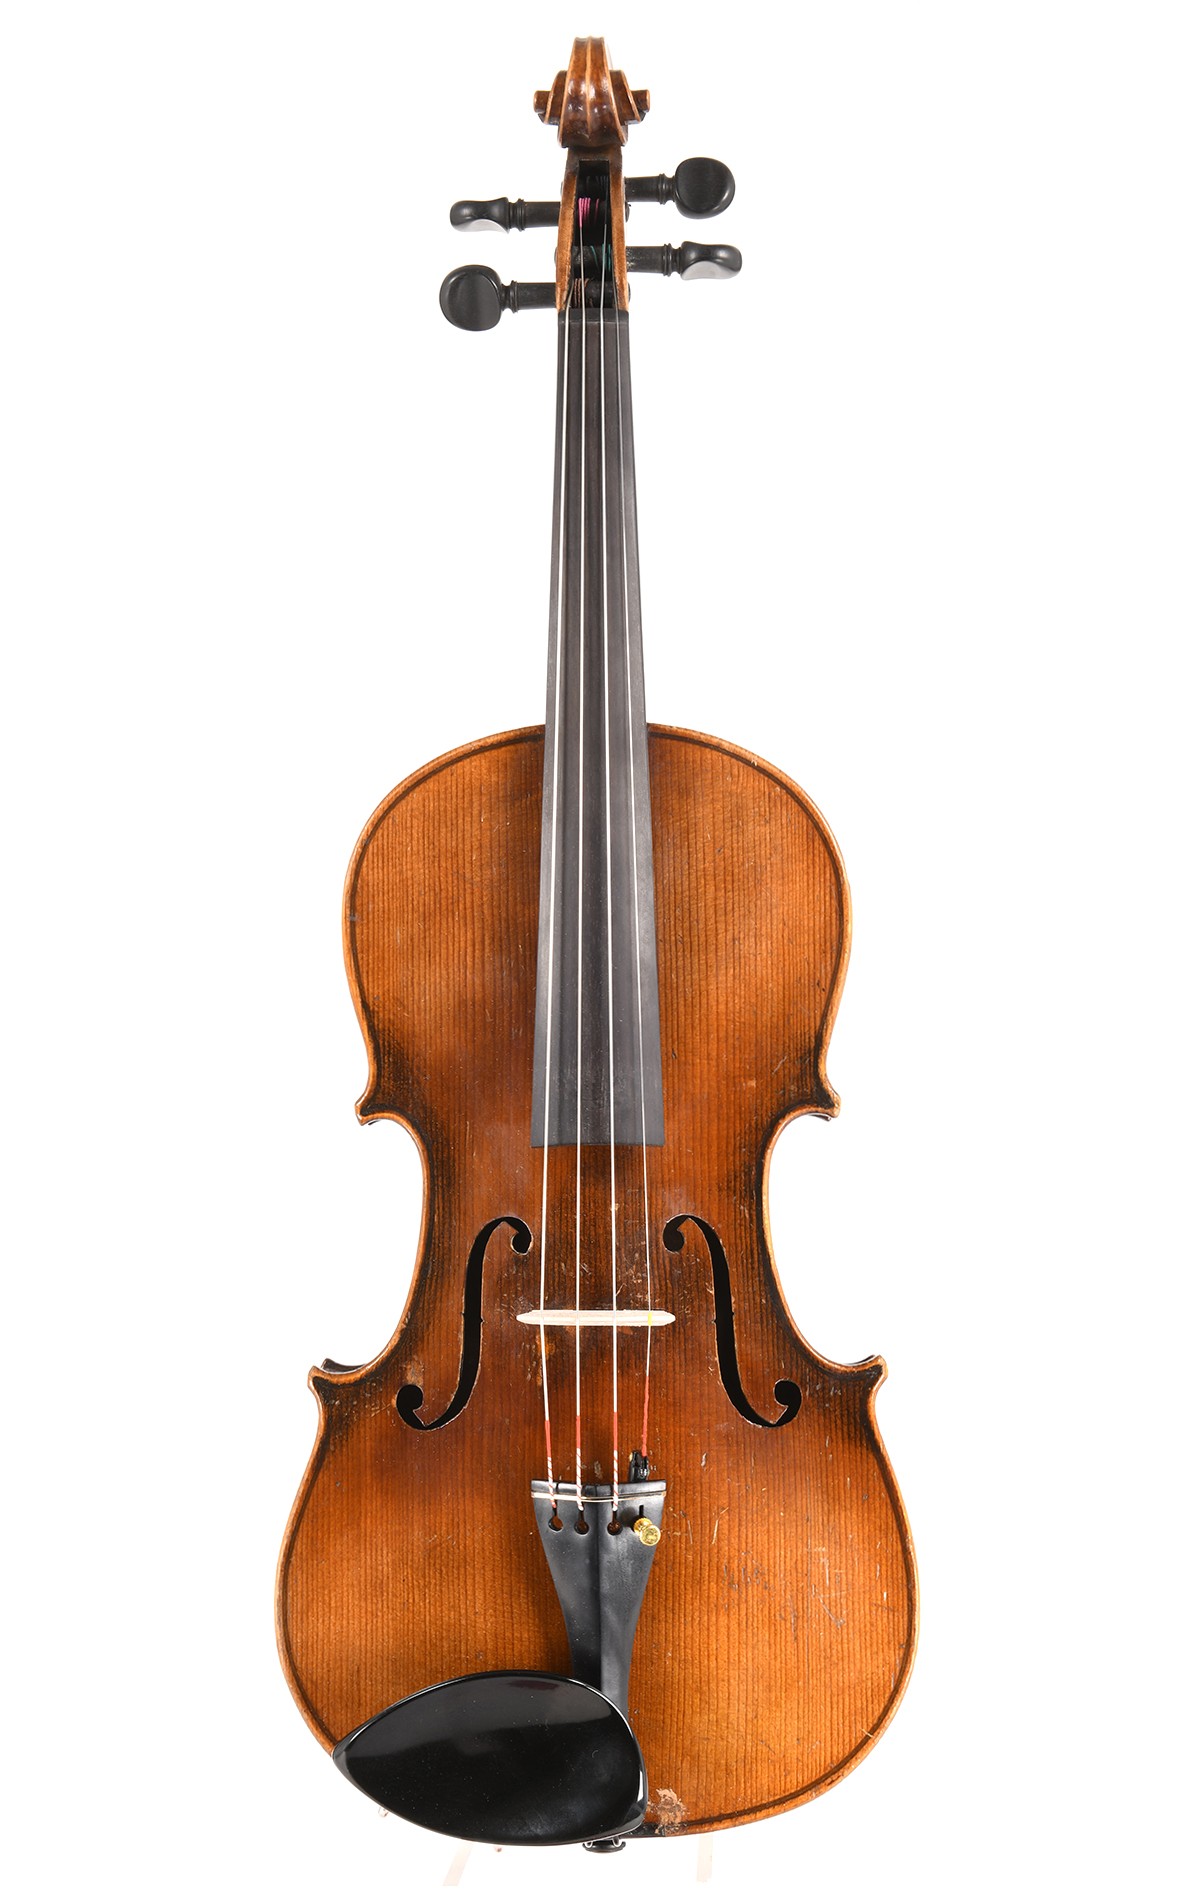 Violon de Markneukirchen vers 1930, modèle Stradivarius